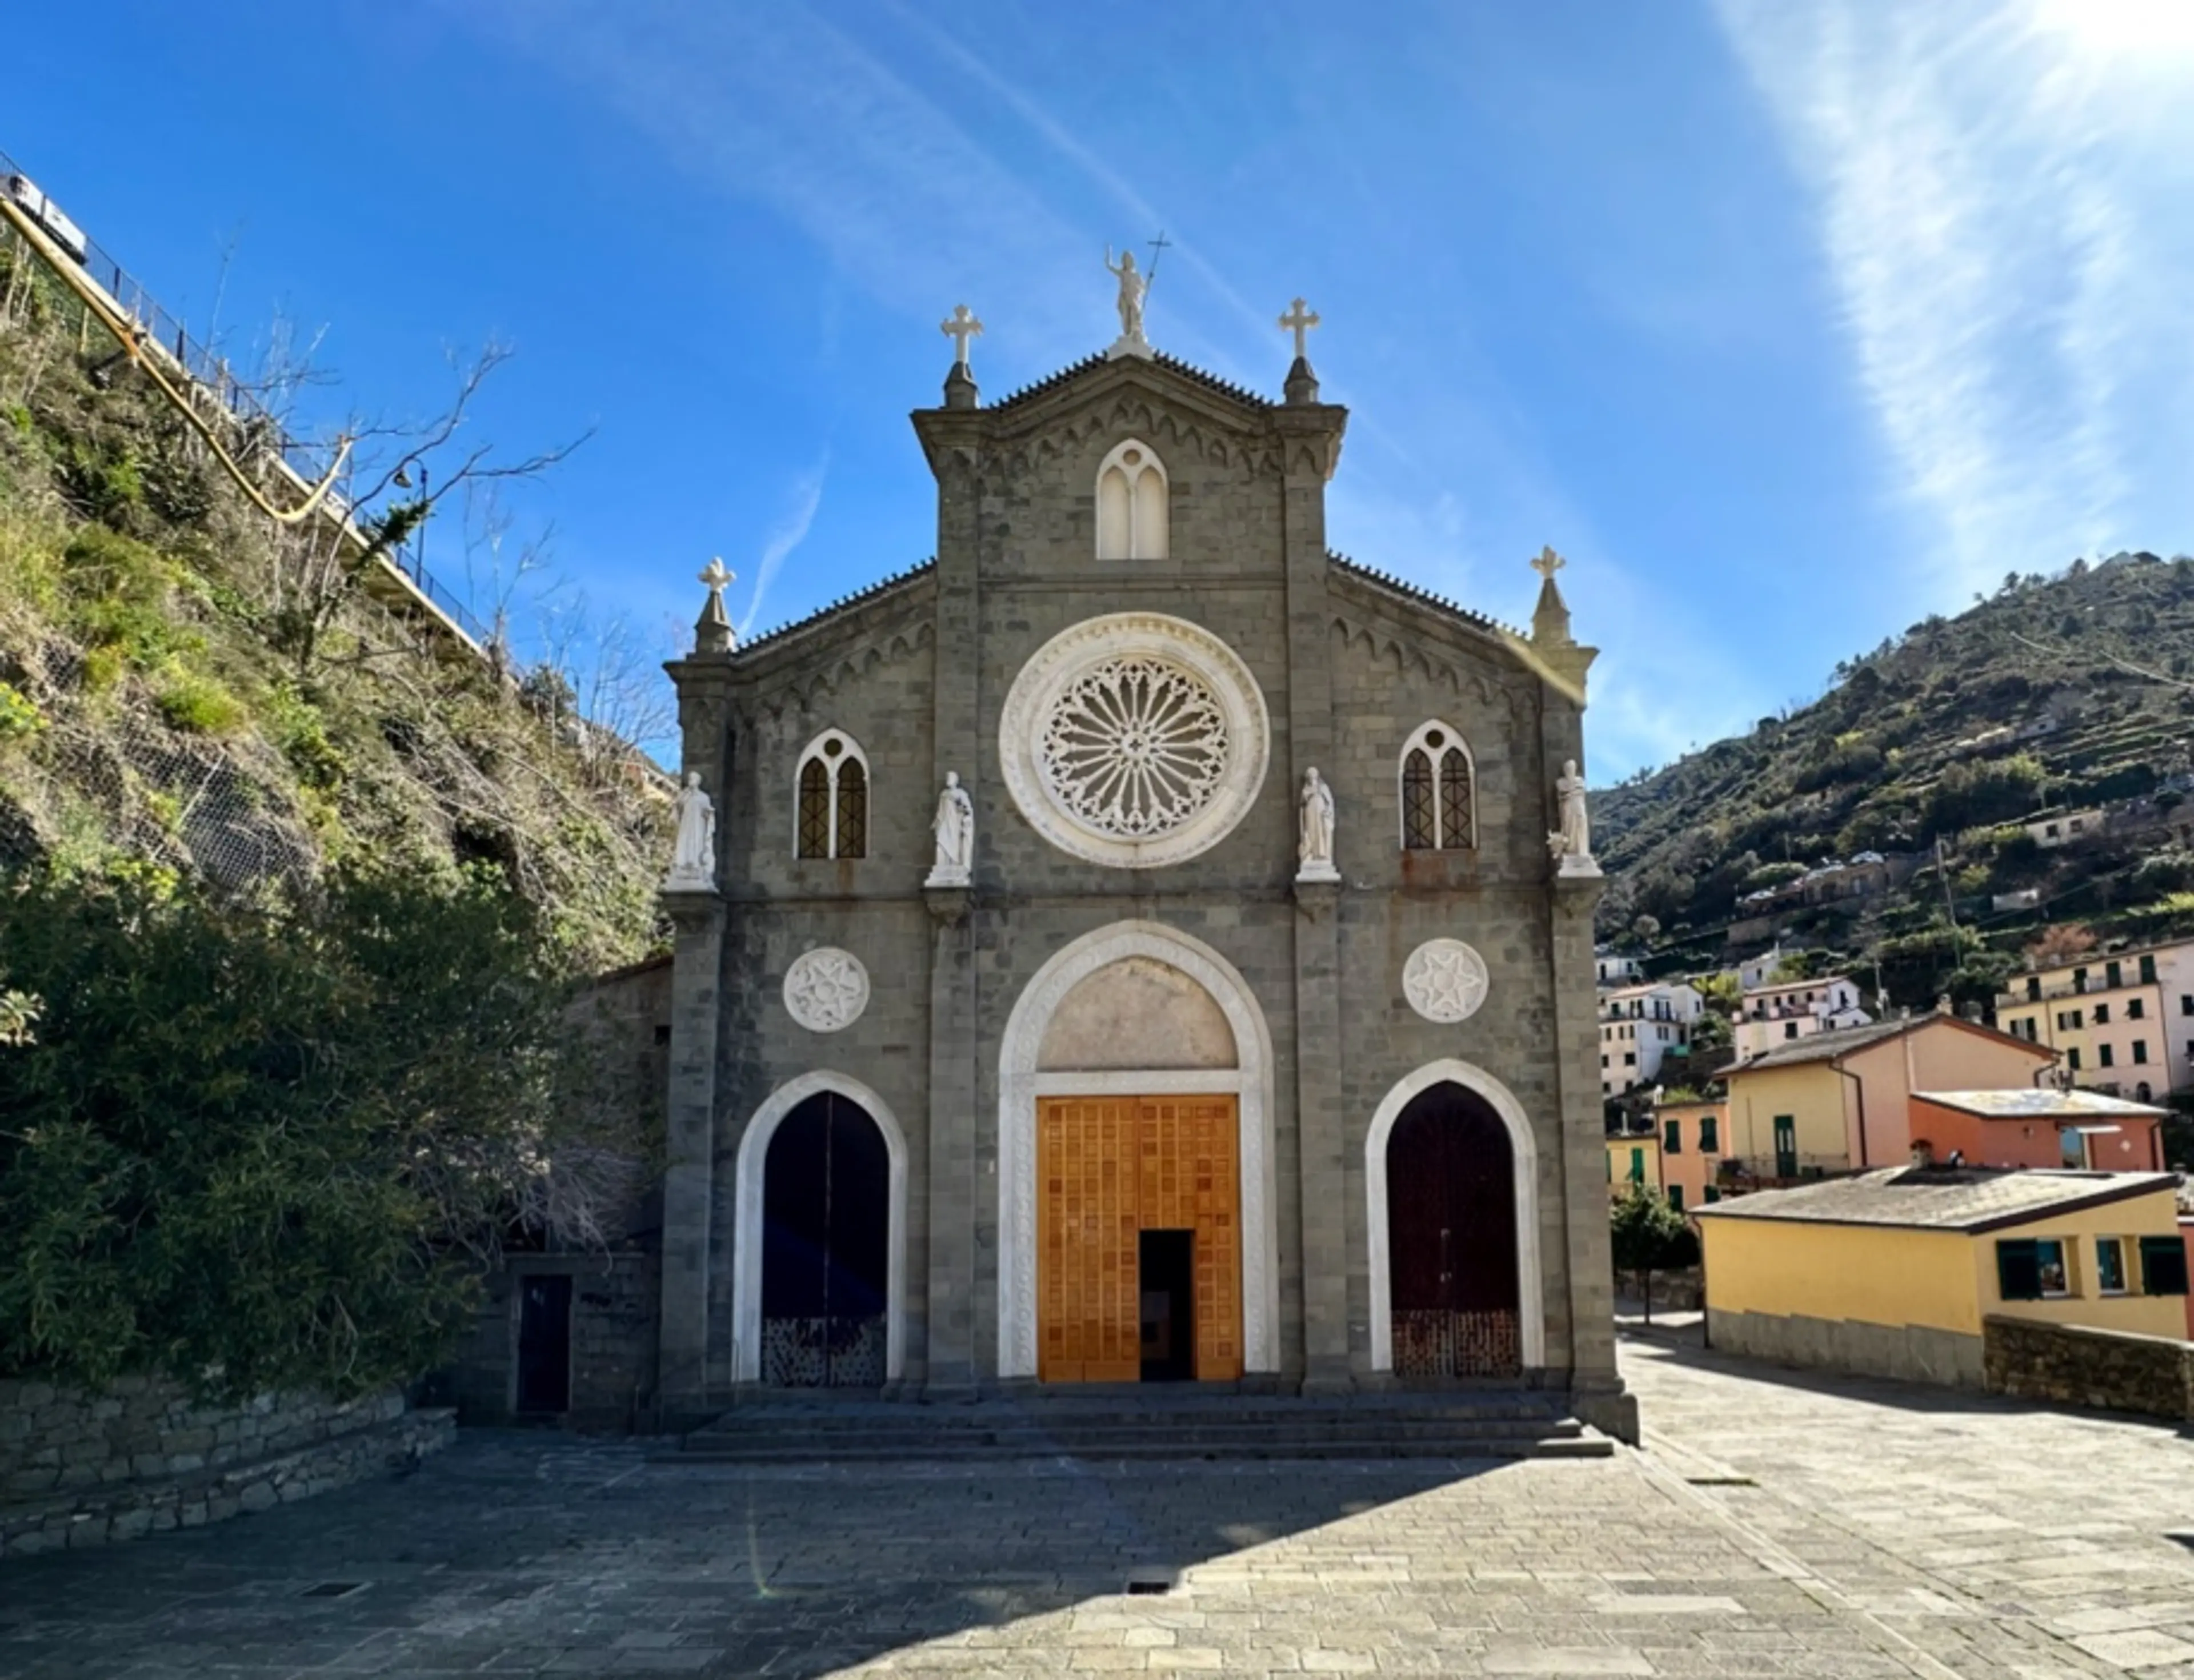 Church of San Giovanni Battista in Riomaggiore